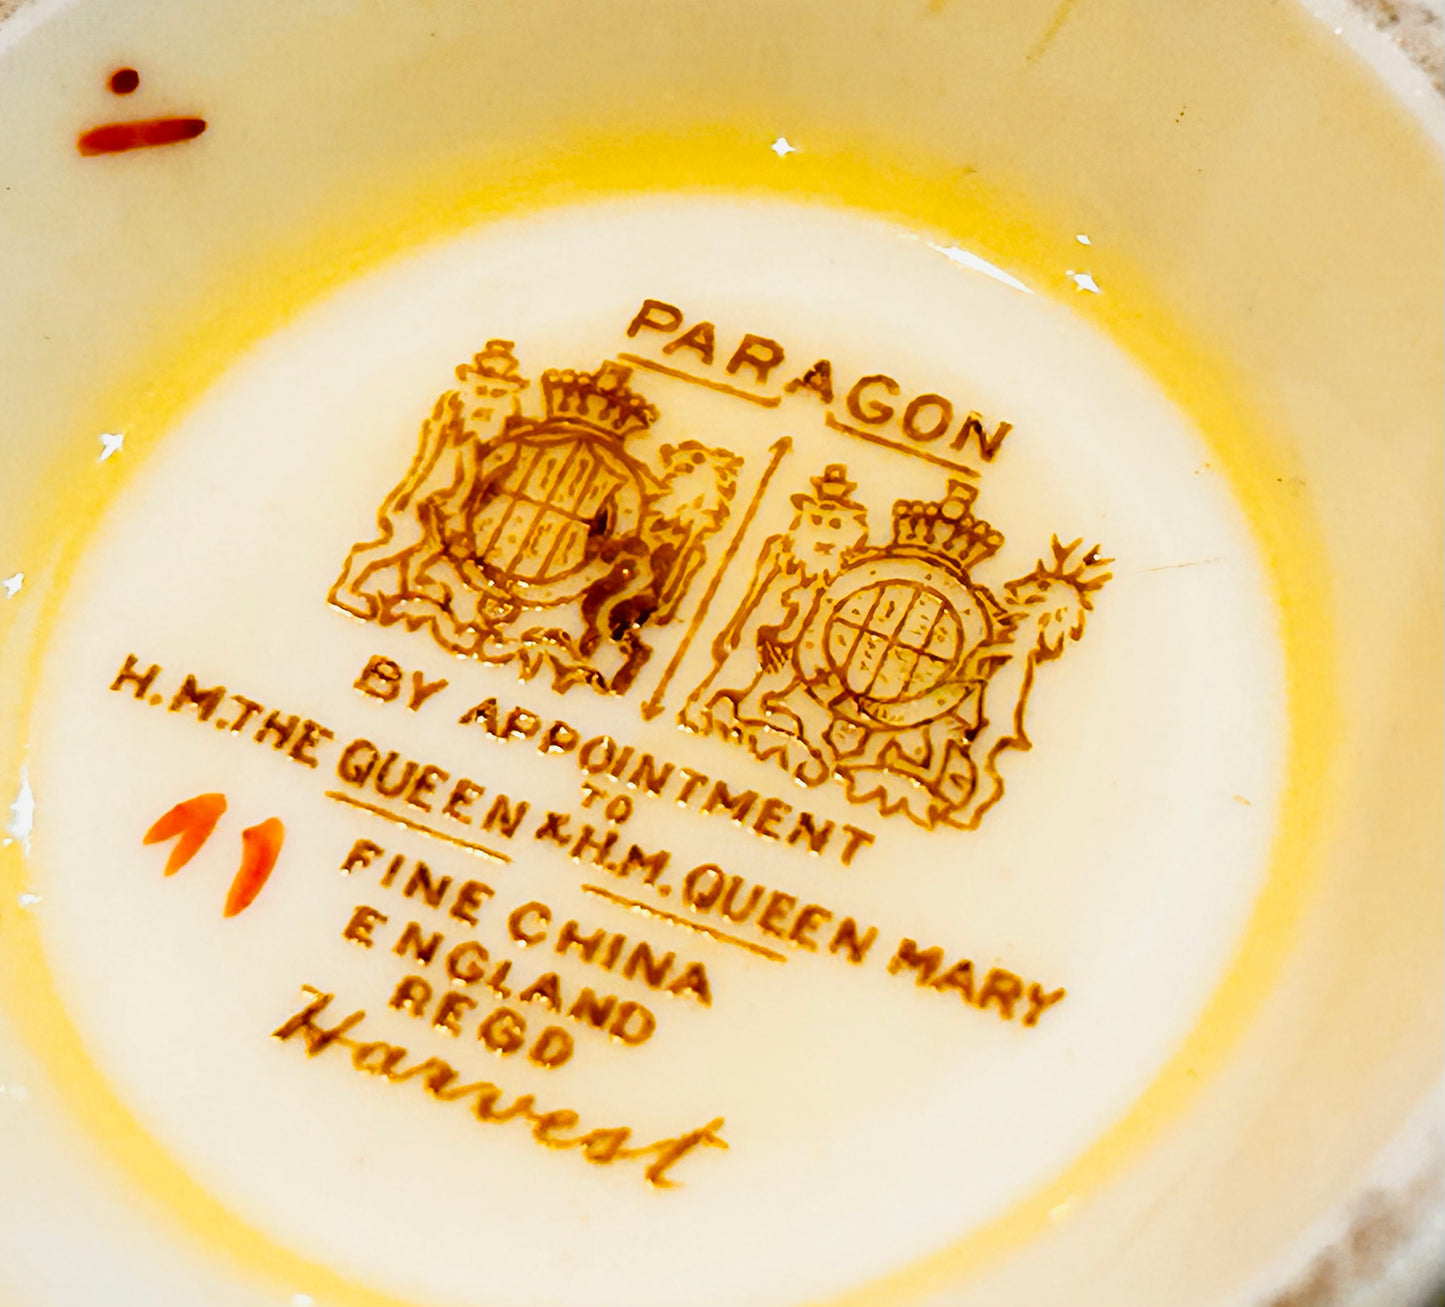 Sugar Bowl by Paragon